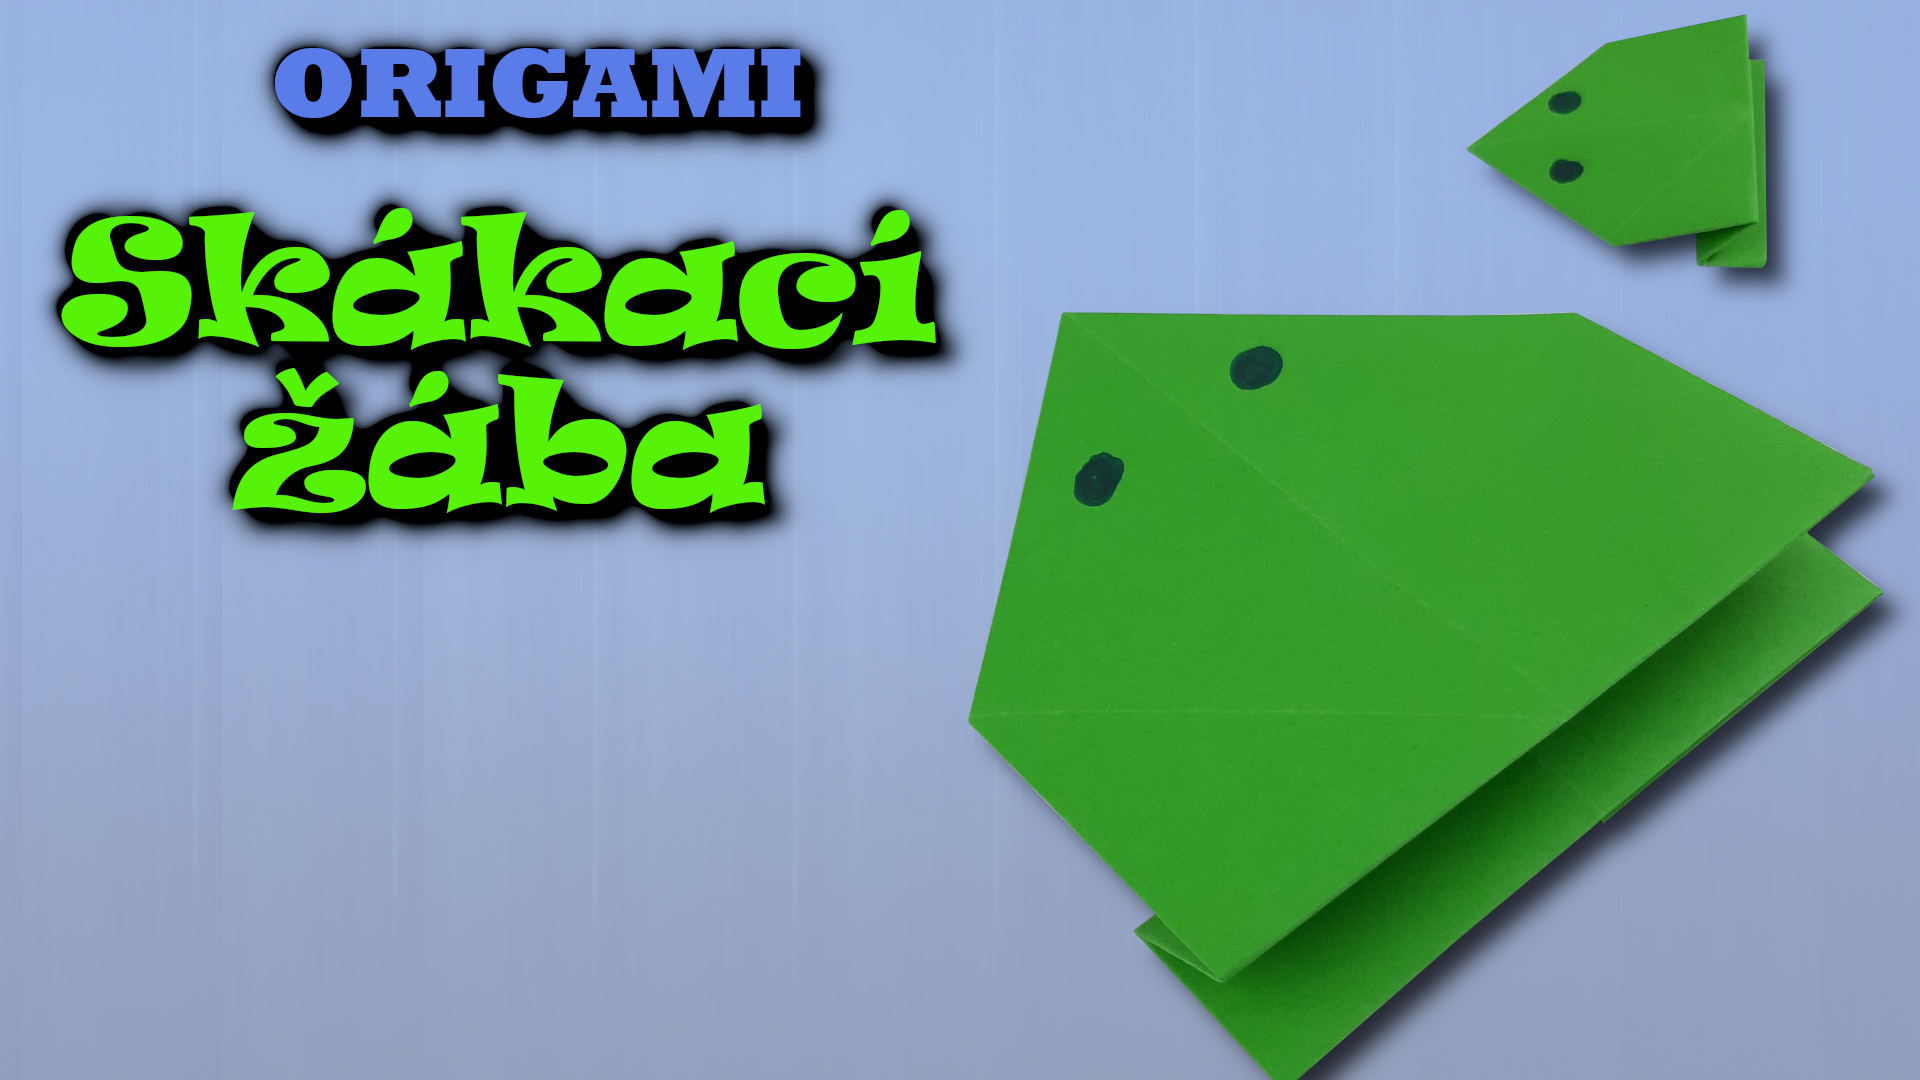 Origami skákací žába - jak složit skákací žábu z papíru A4